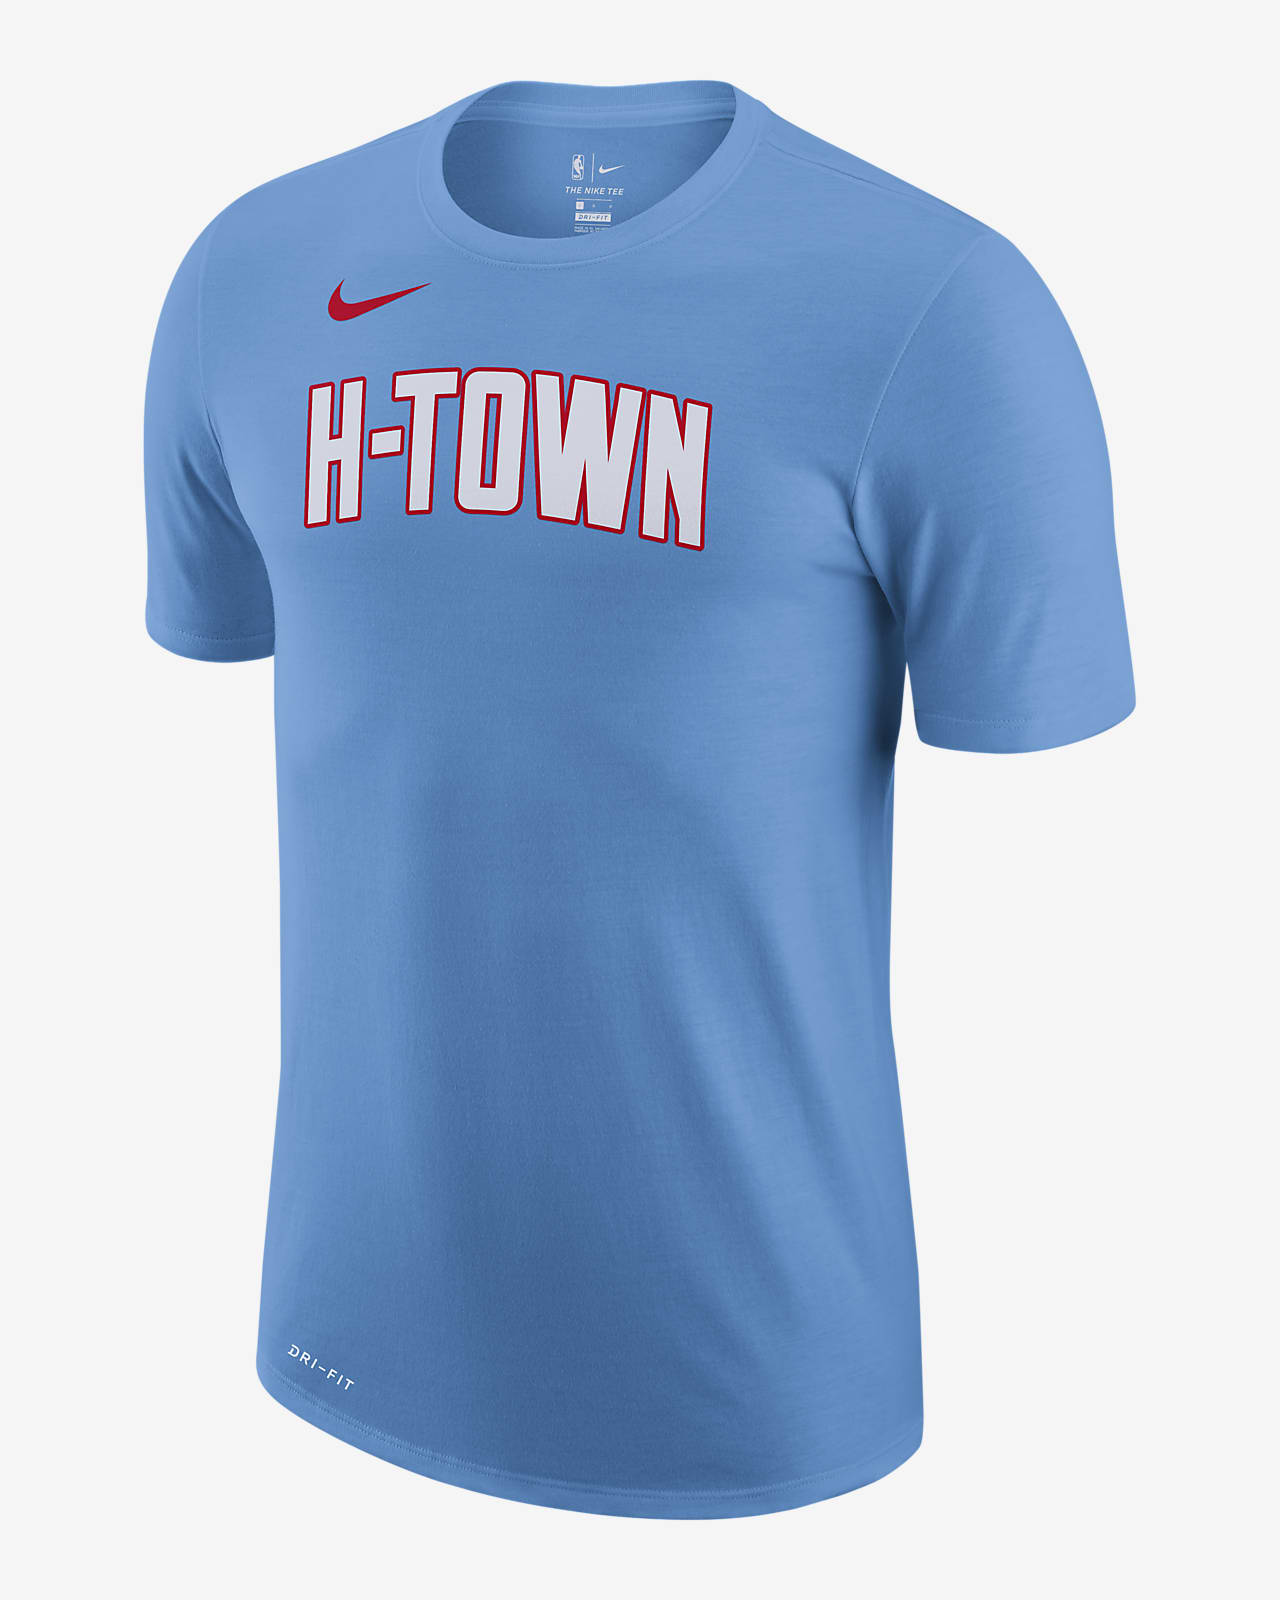 h town rockets shirt